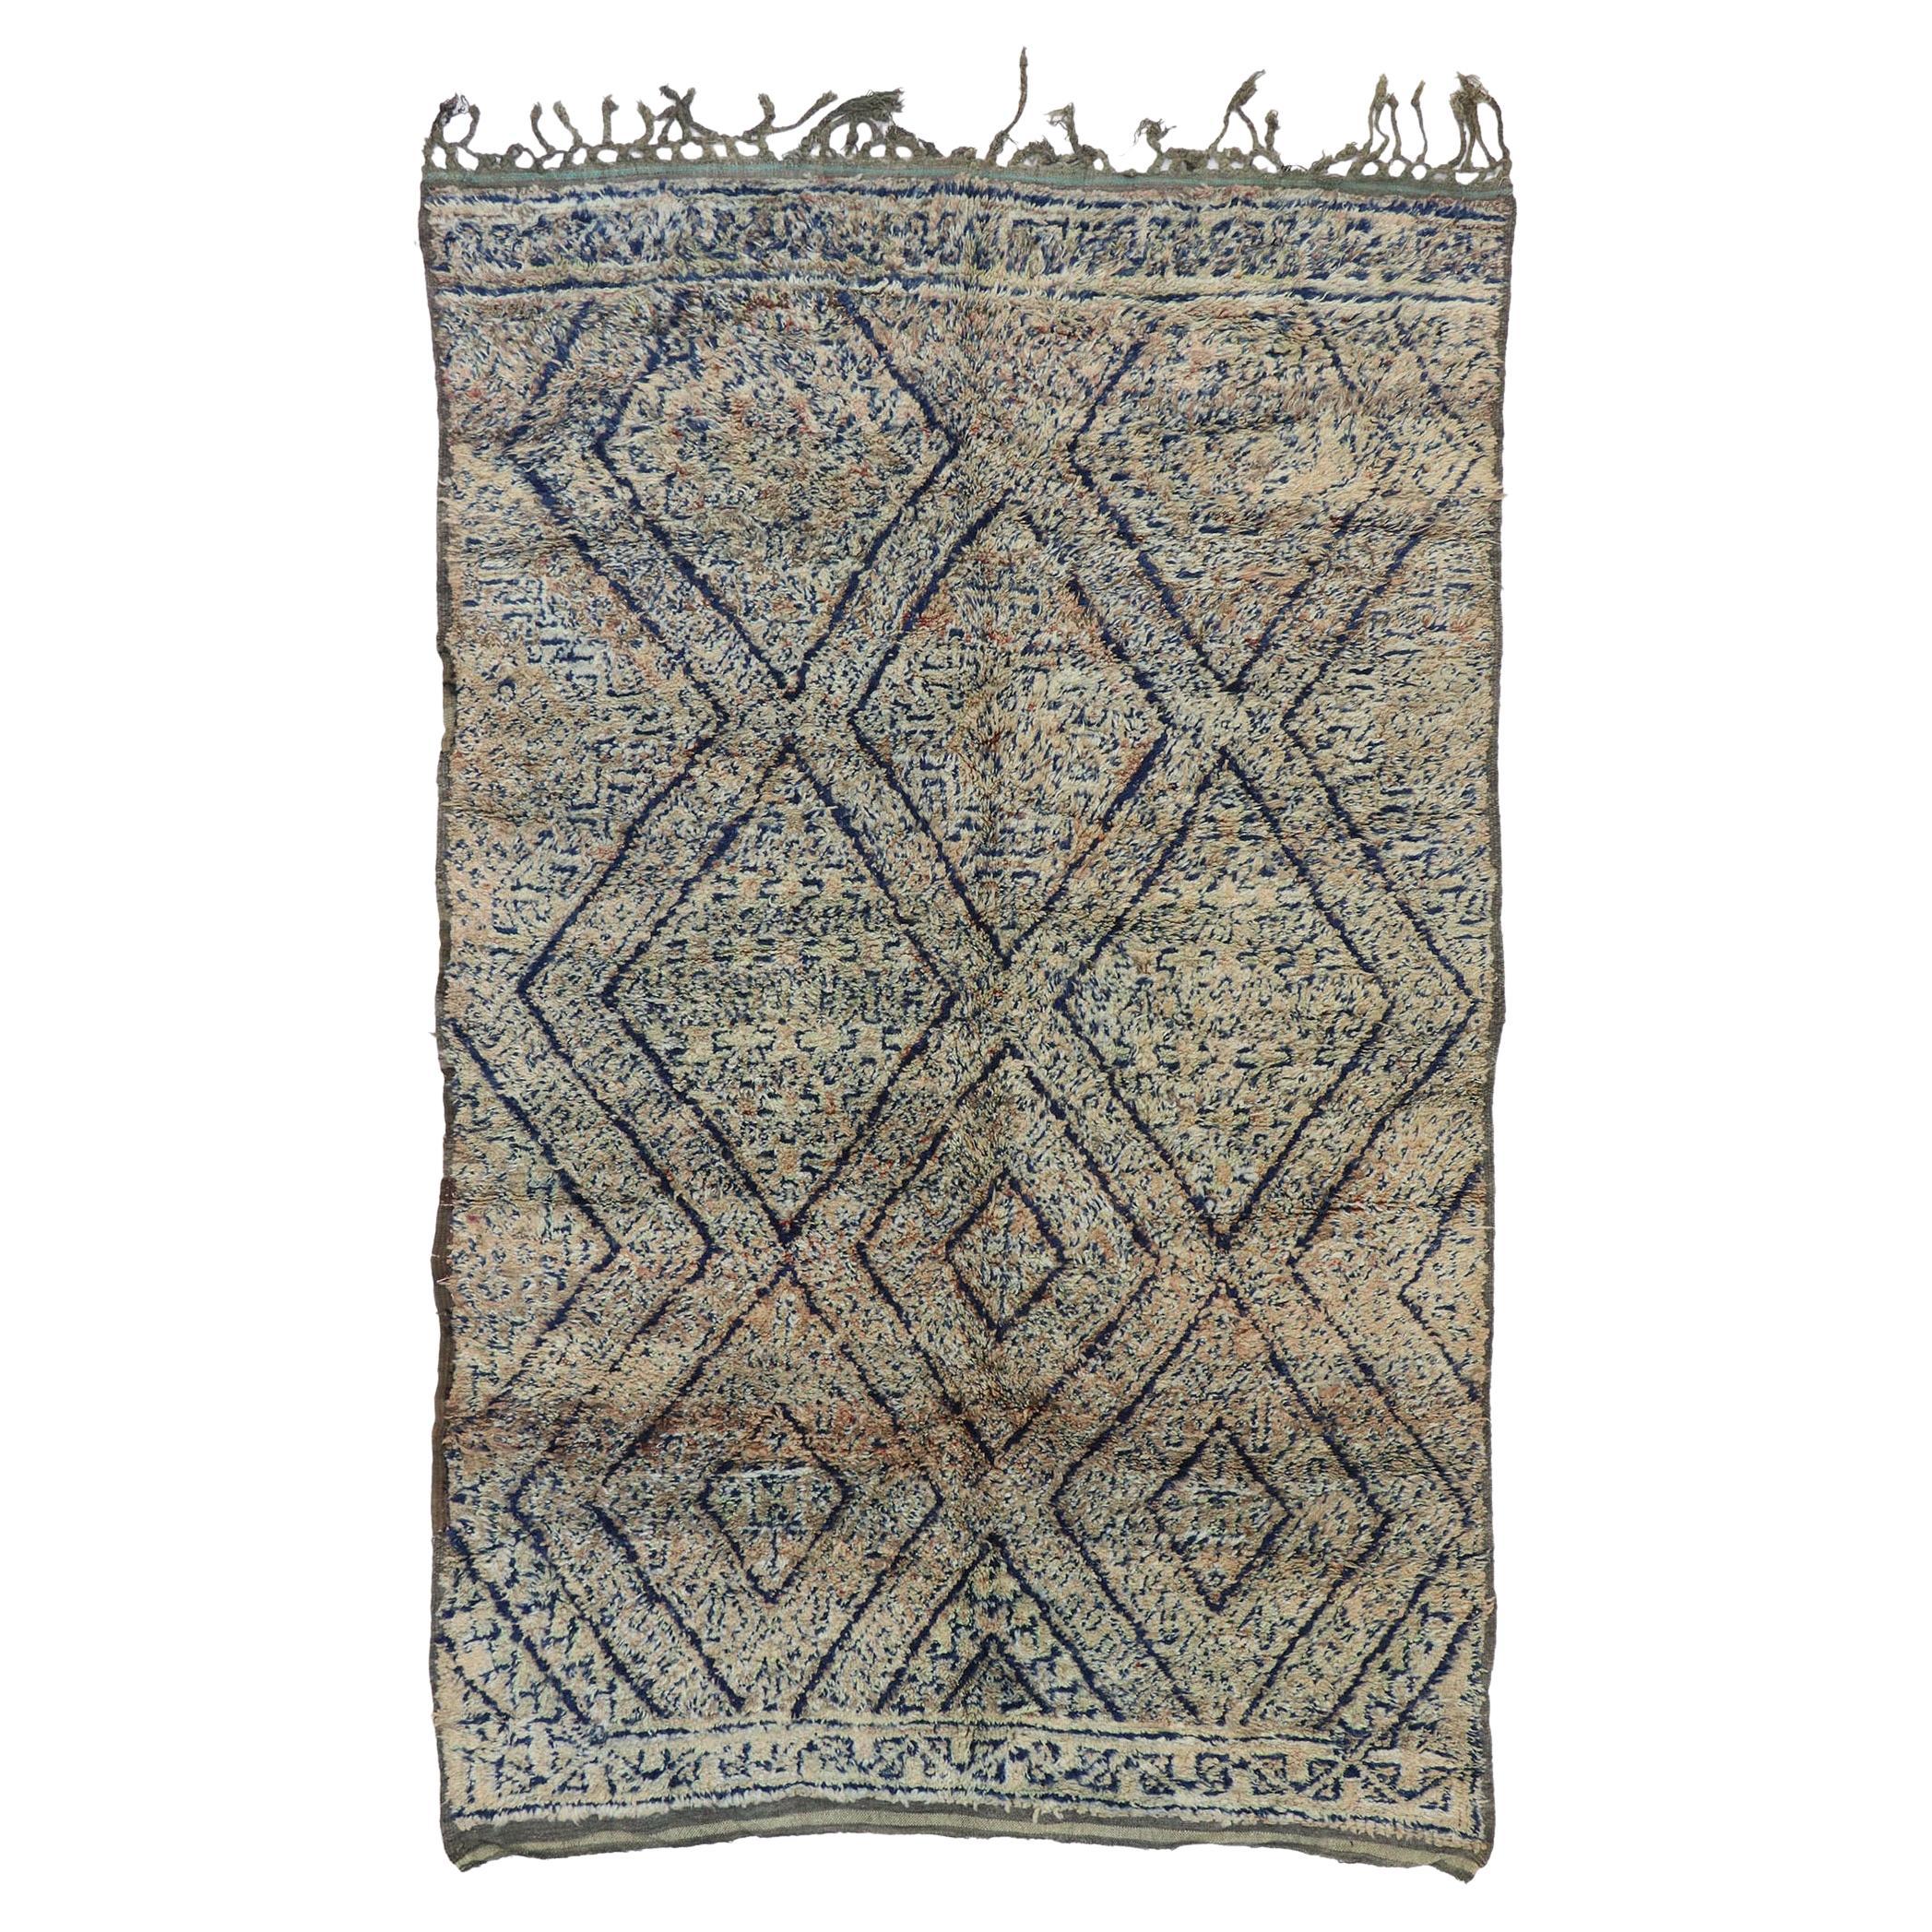 Marokkanischer Vintage-Teppich Beni MGuild, rustikaler Charme trifft auf sonnengebräunte Eleganz im Angebot